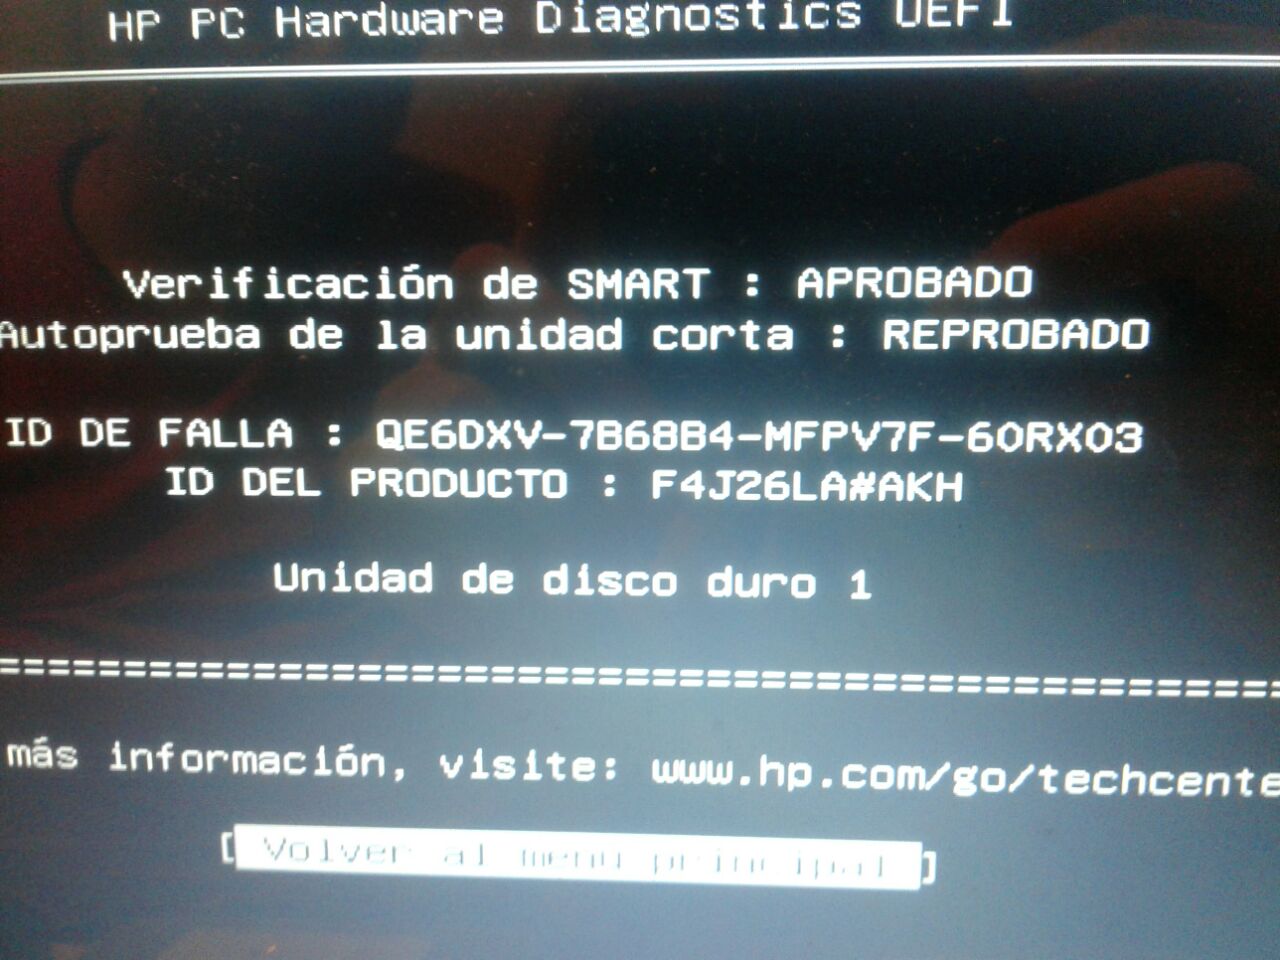 Error de disco duro - Comunidad de Soporte HP - 754767